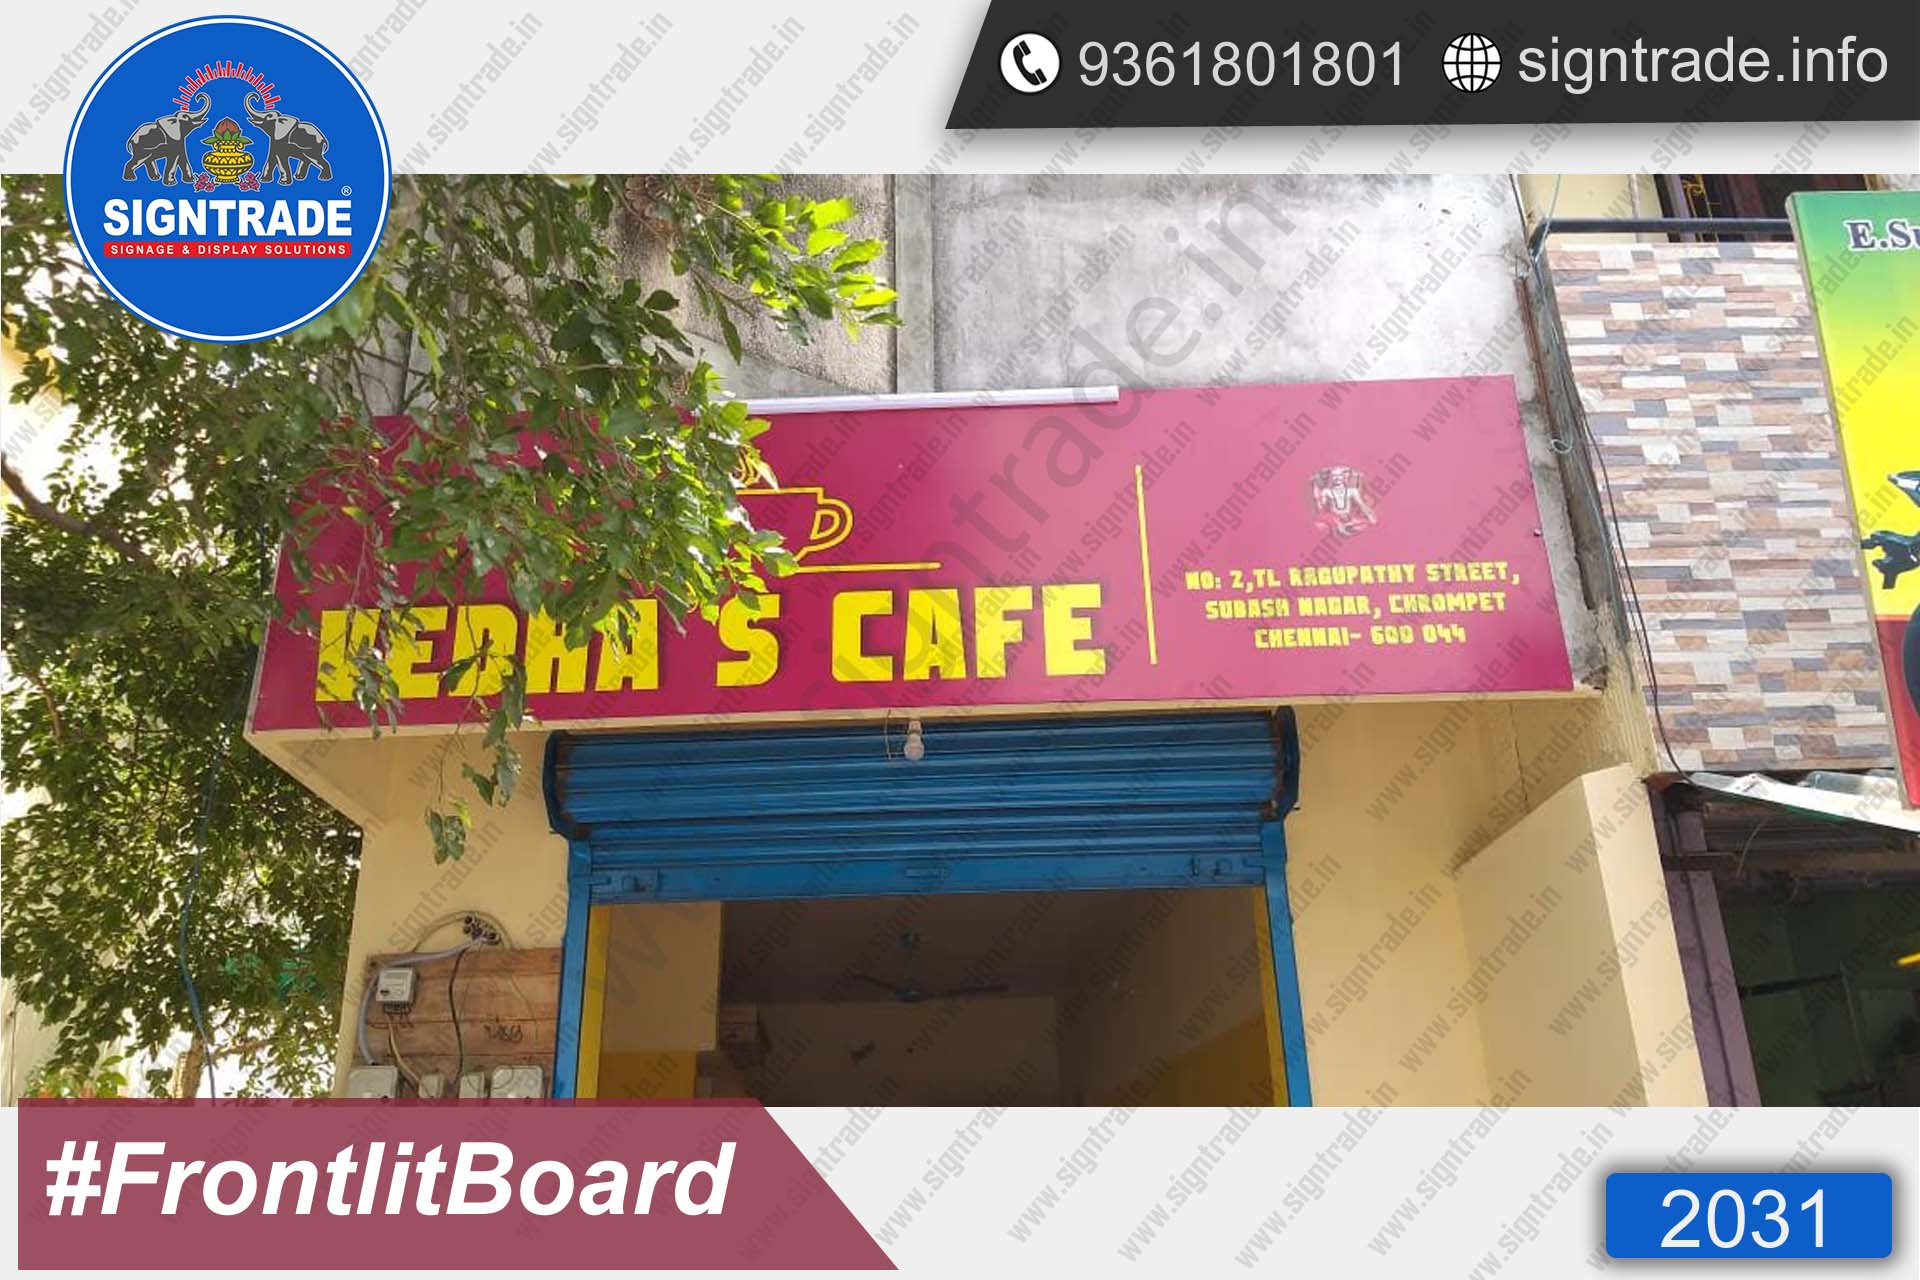 Vedhas Cafe Frontlit Board